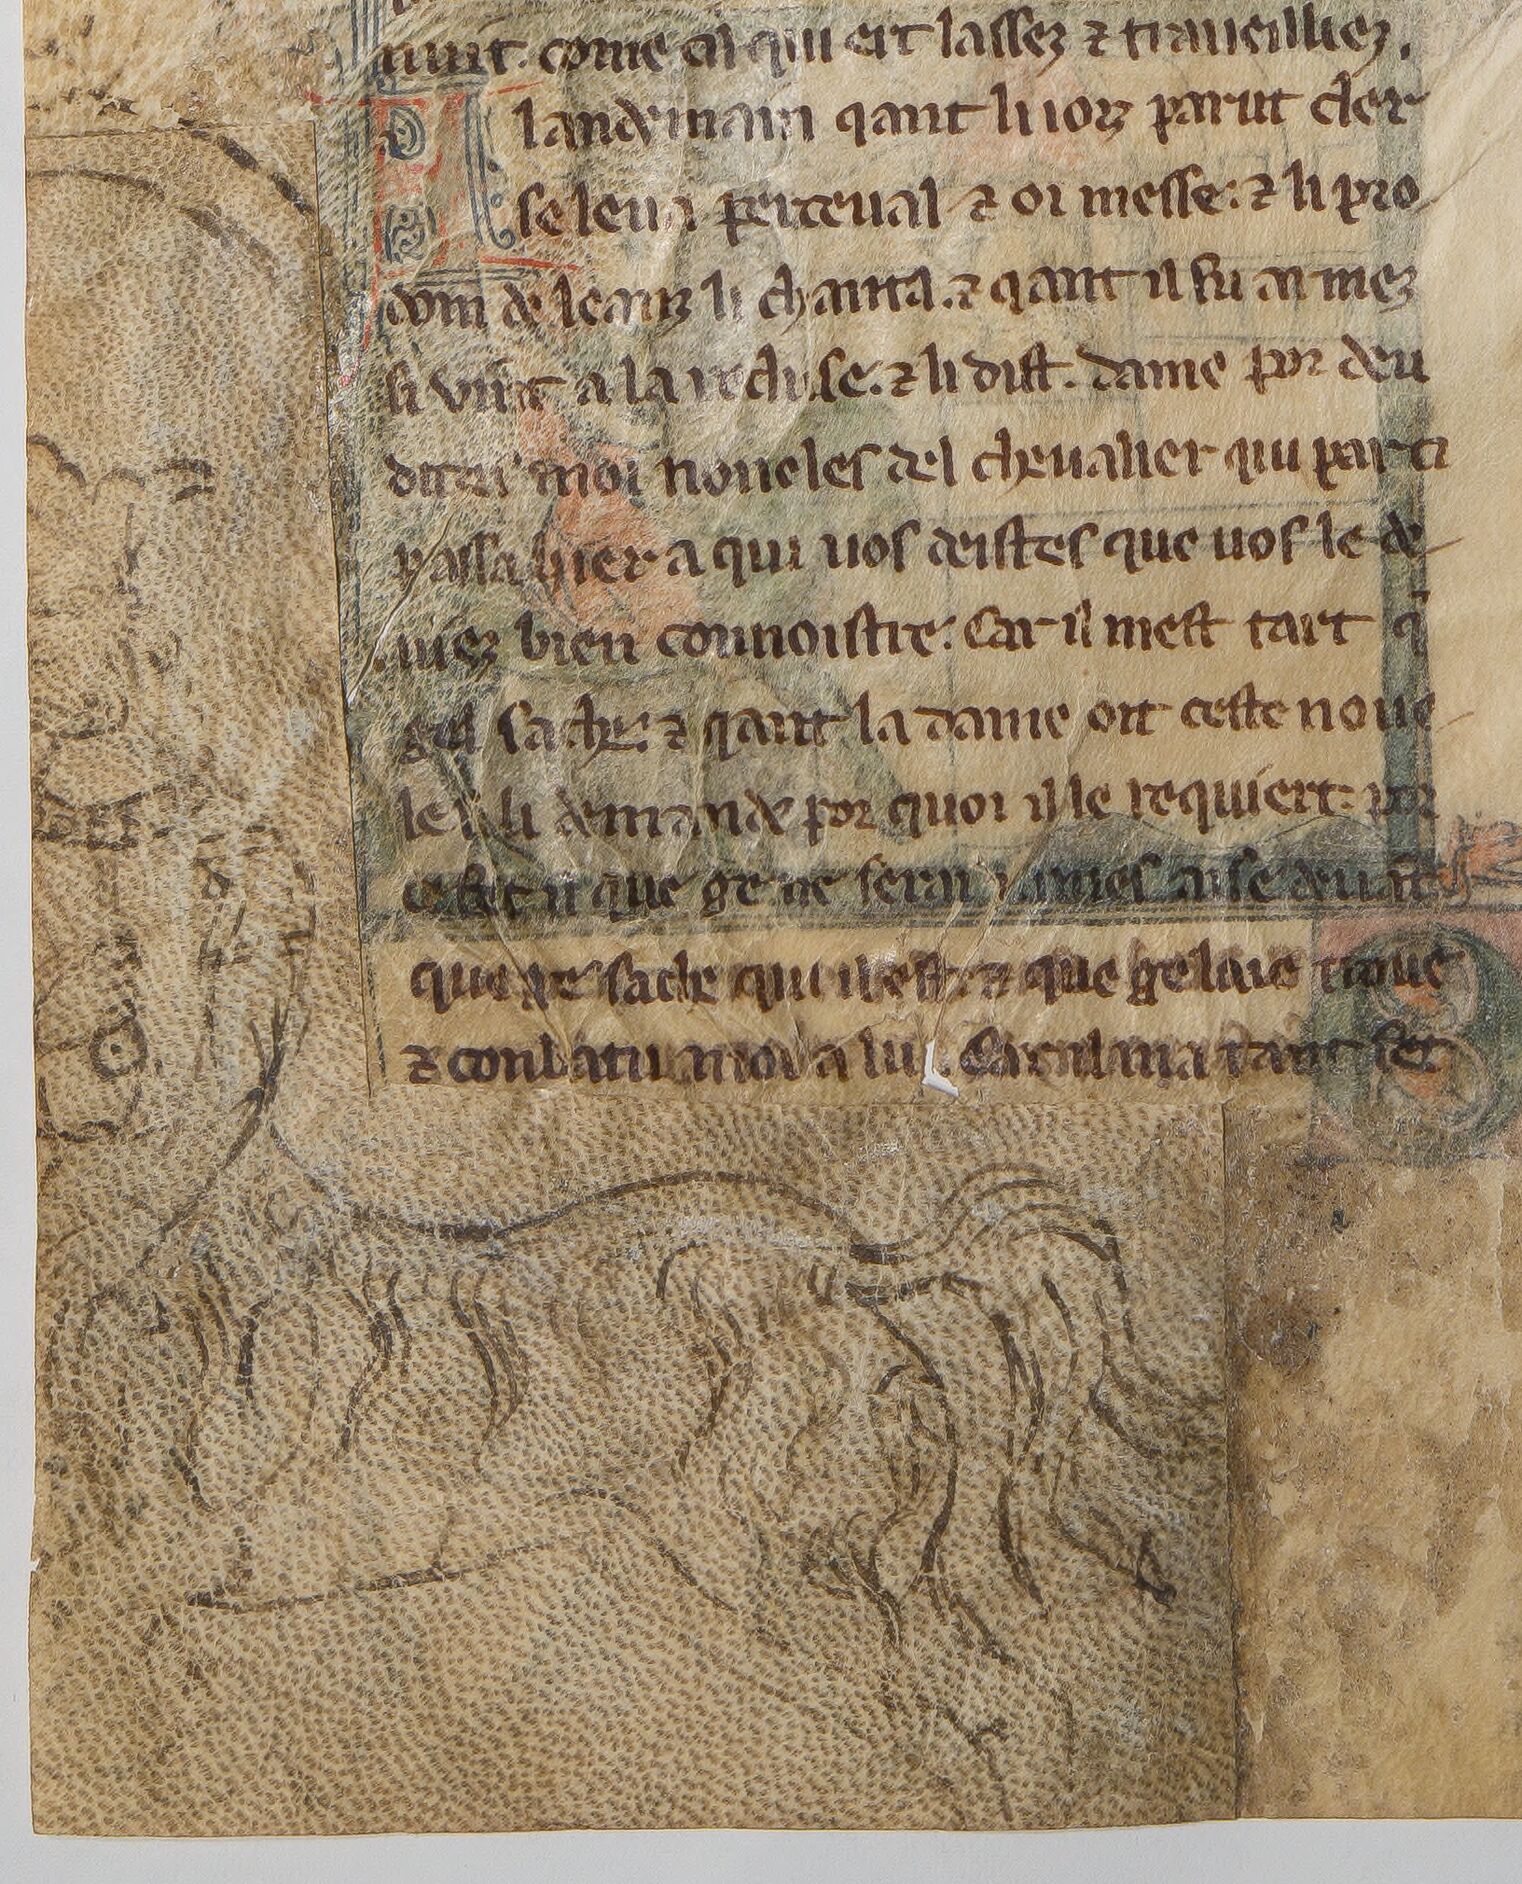 Pre-decorated parchment patch